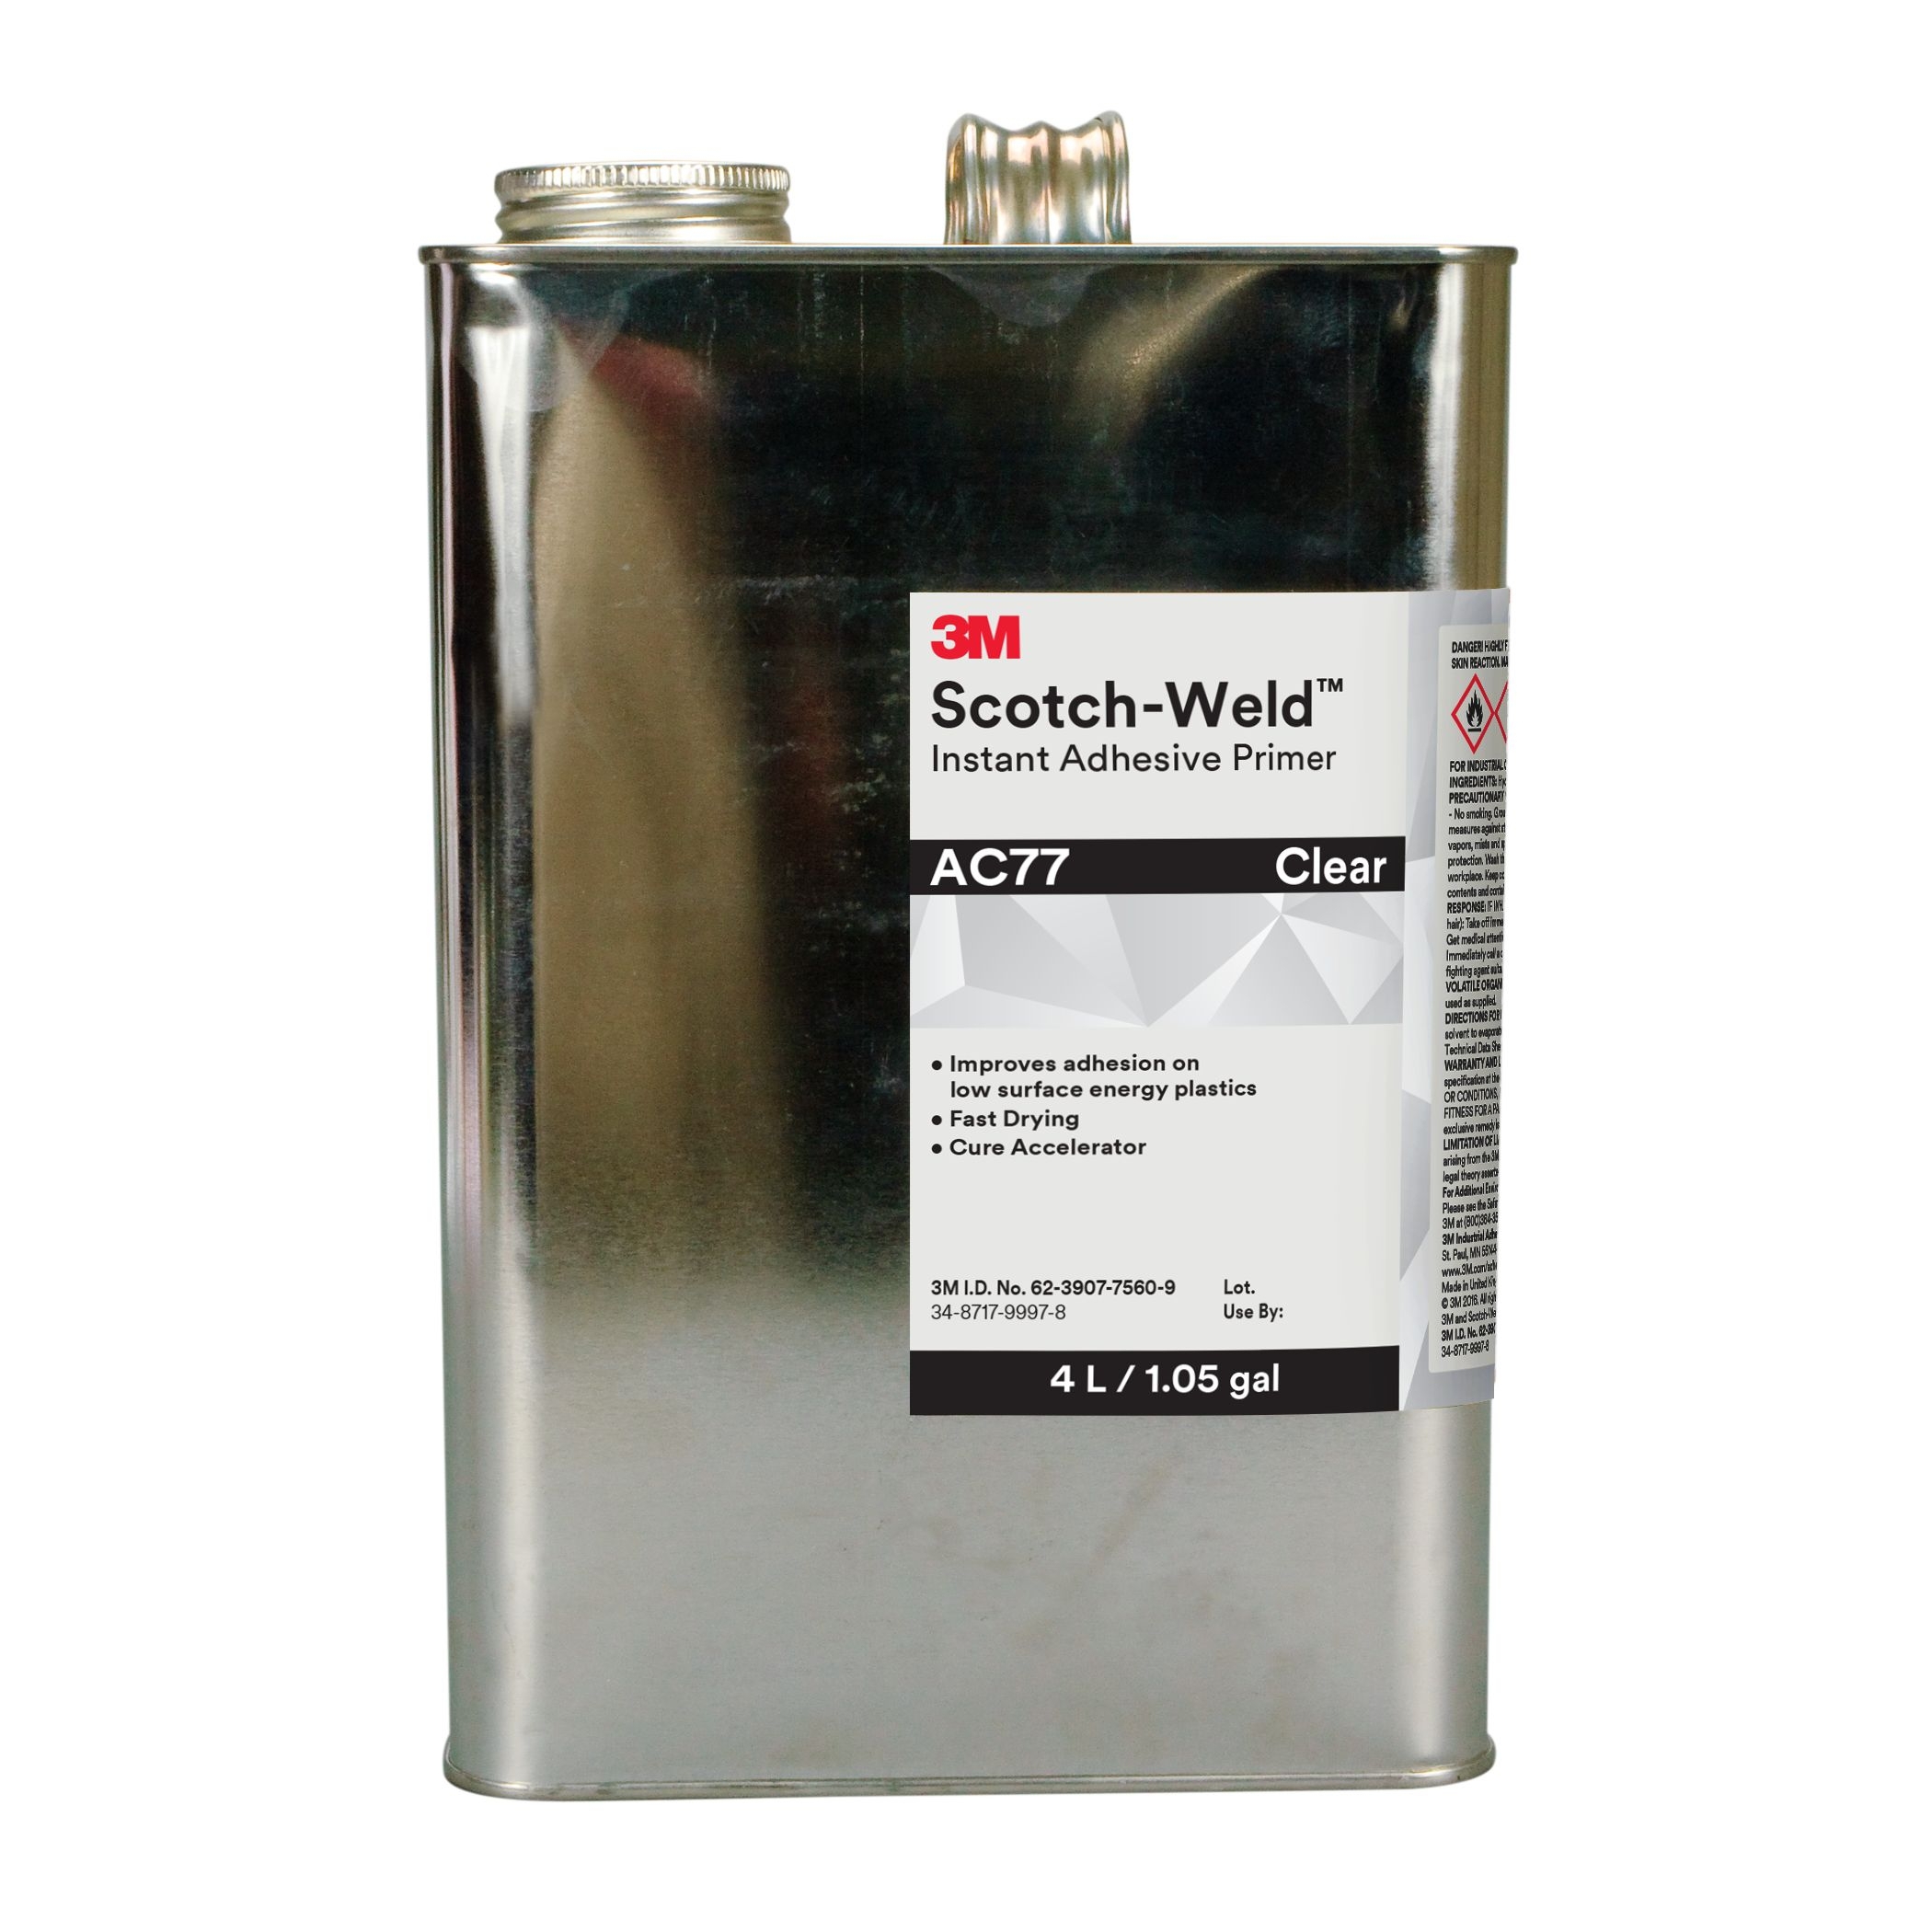 3M Scotch-Weld Primer pour adhésifs cyanoacrylates à base d'heptane AC 77, transparent, 1 l